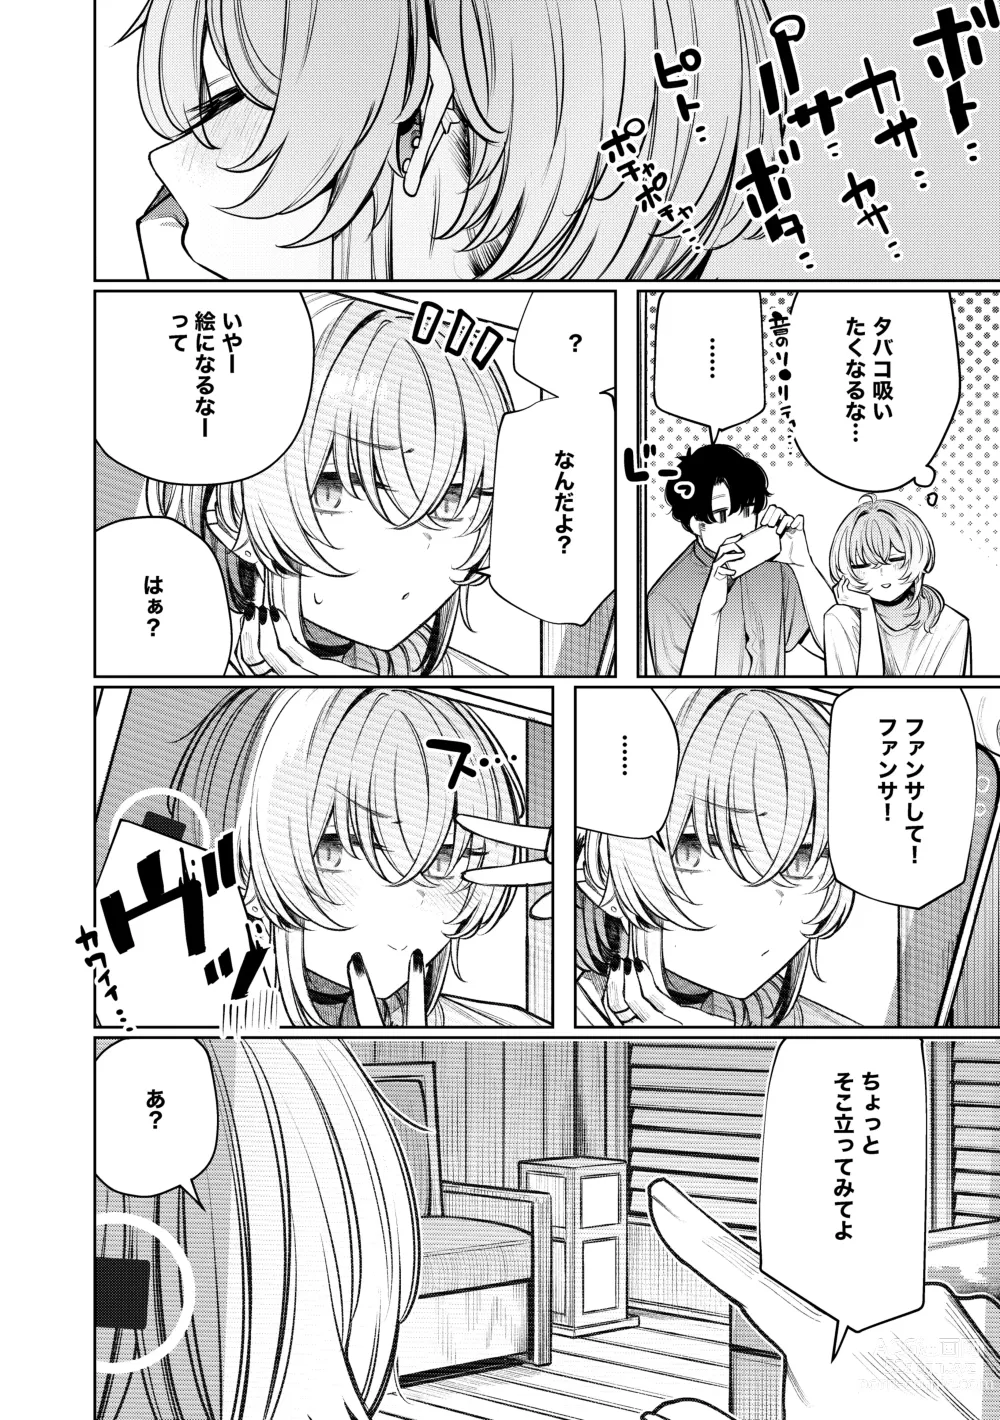 Page 8 of doujinshi Furyouppoi Kanojo to Daradara Hamedori Shitai.